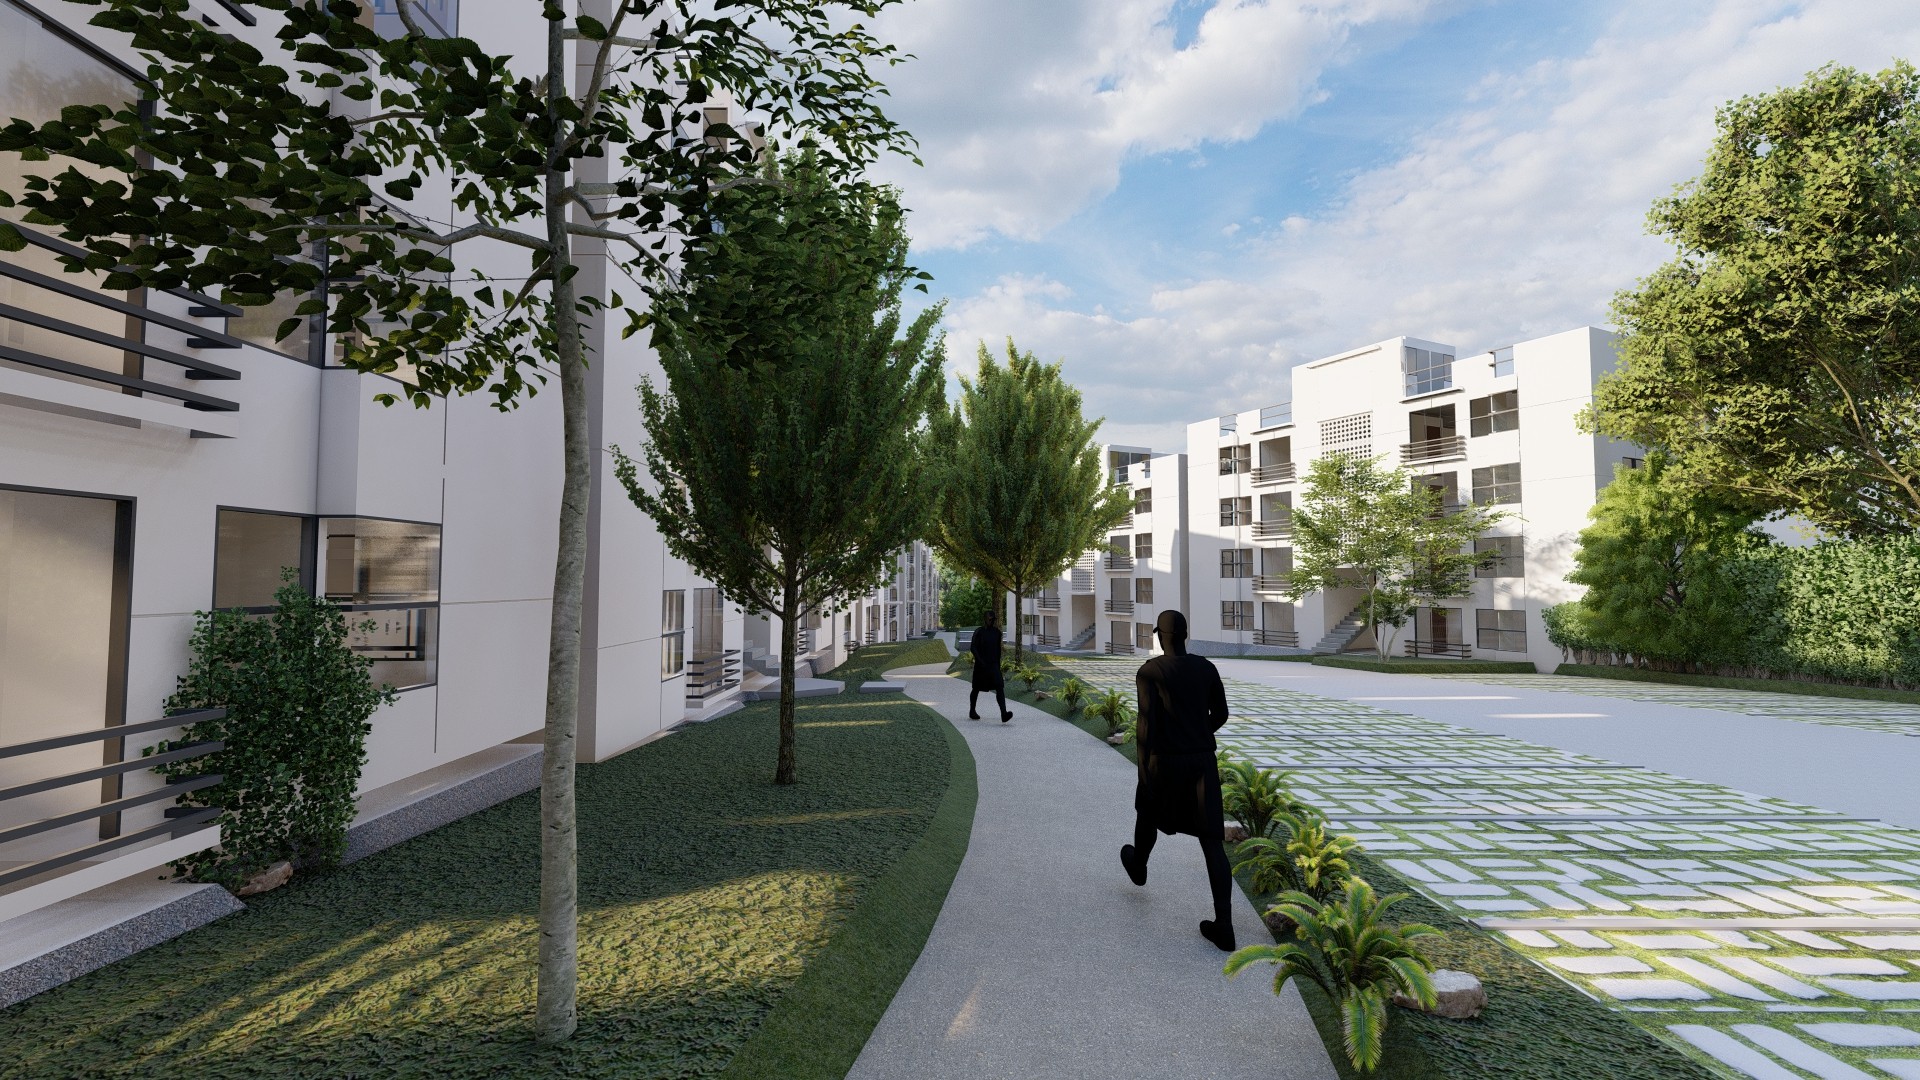 apartamentos - Proyecto aptos de 2 y 3 hab. y locales comerciales en la av. Charles de Gaulle

